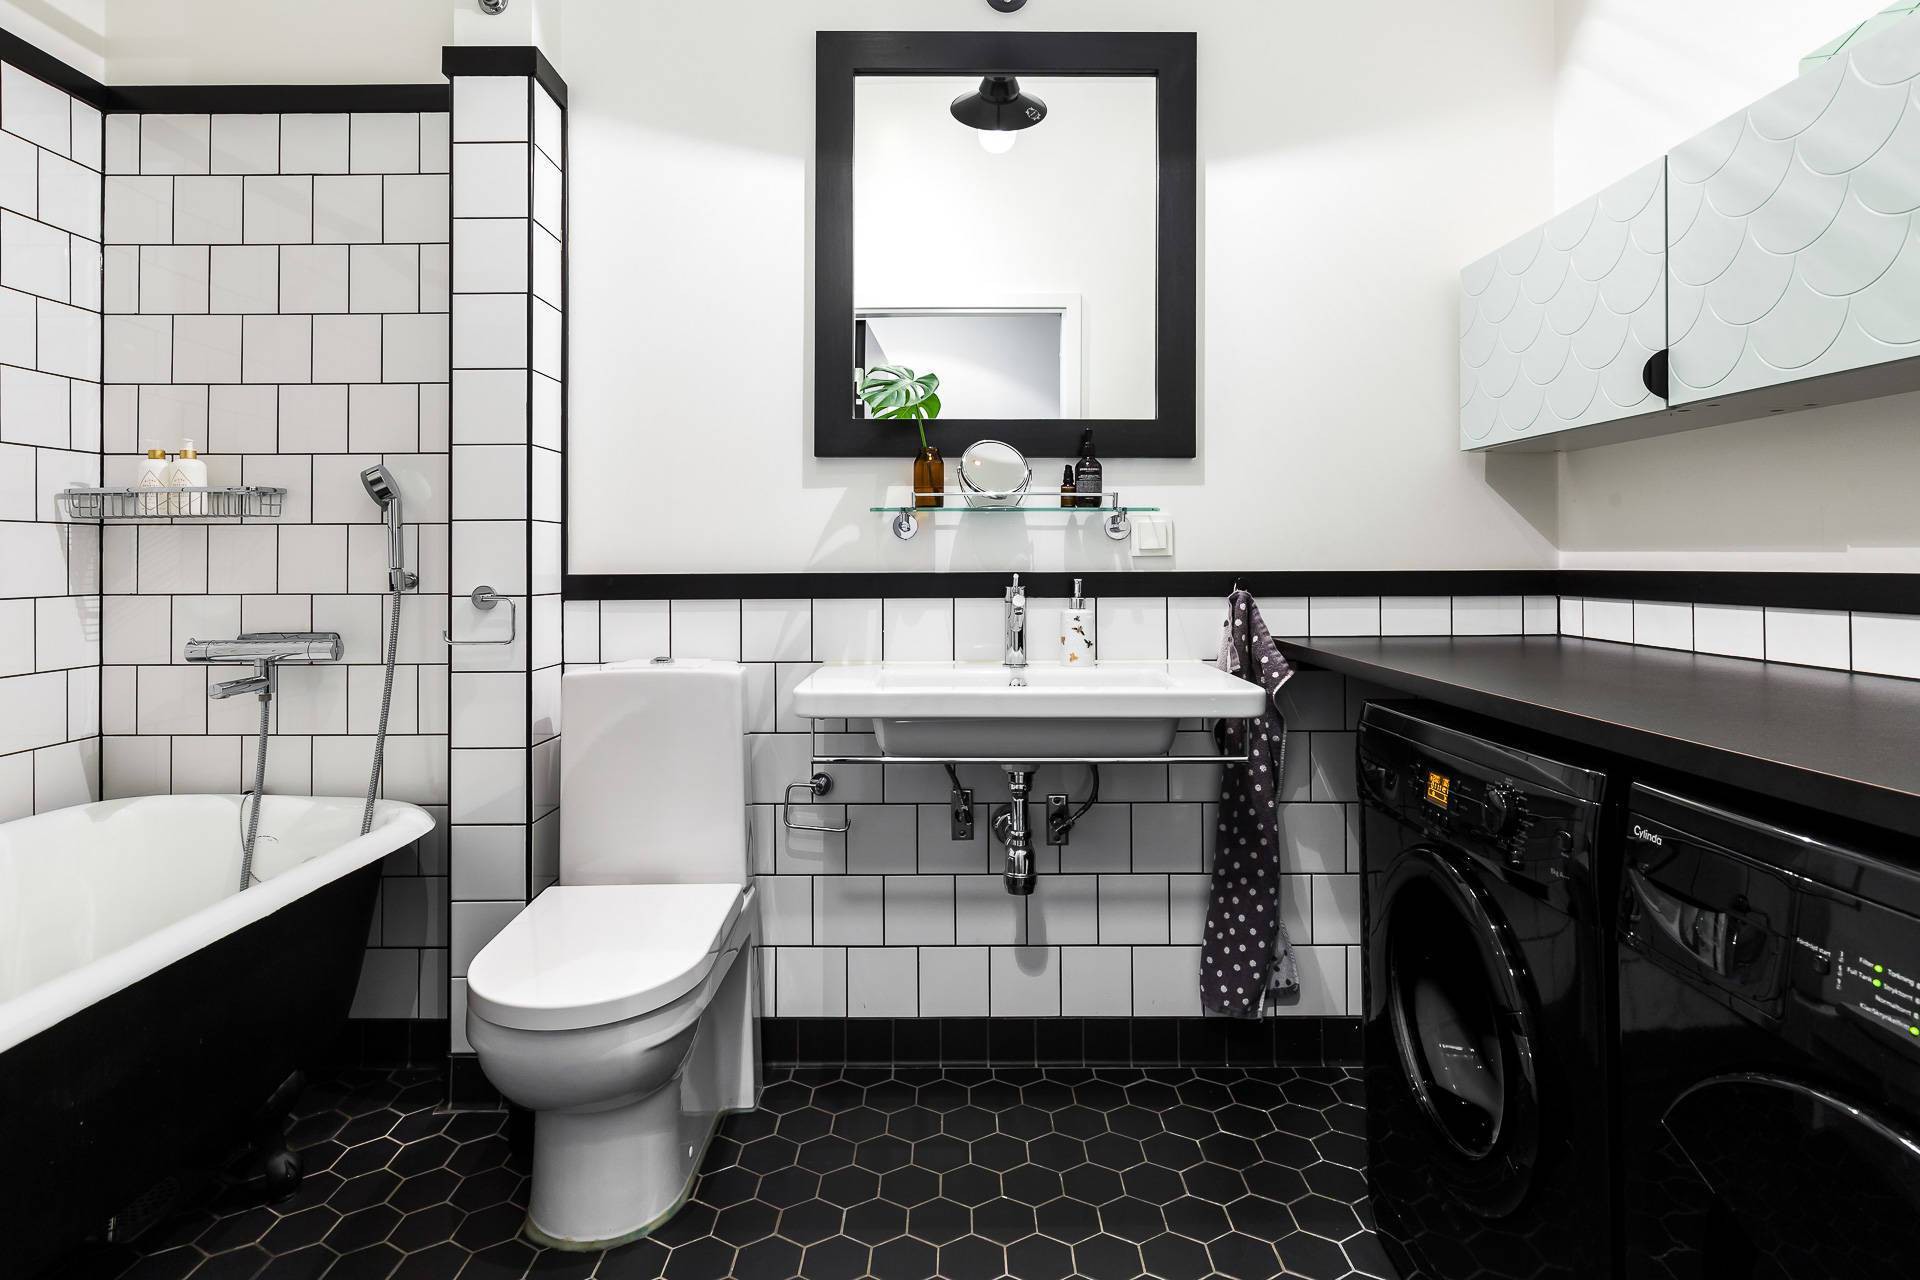  Phòng tắm nổi bật với hai gam màu đen - trắng.